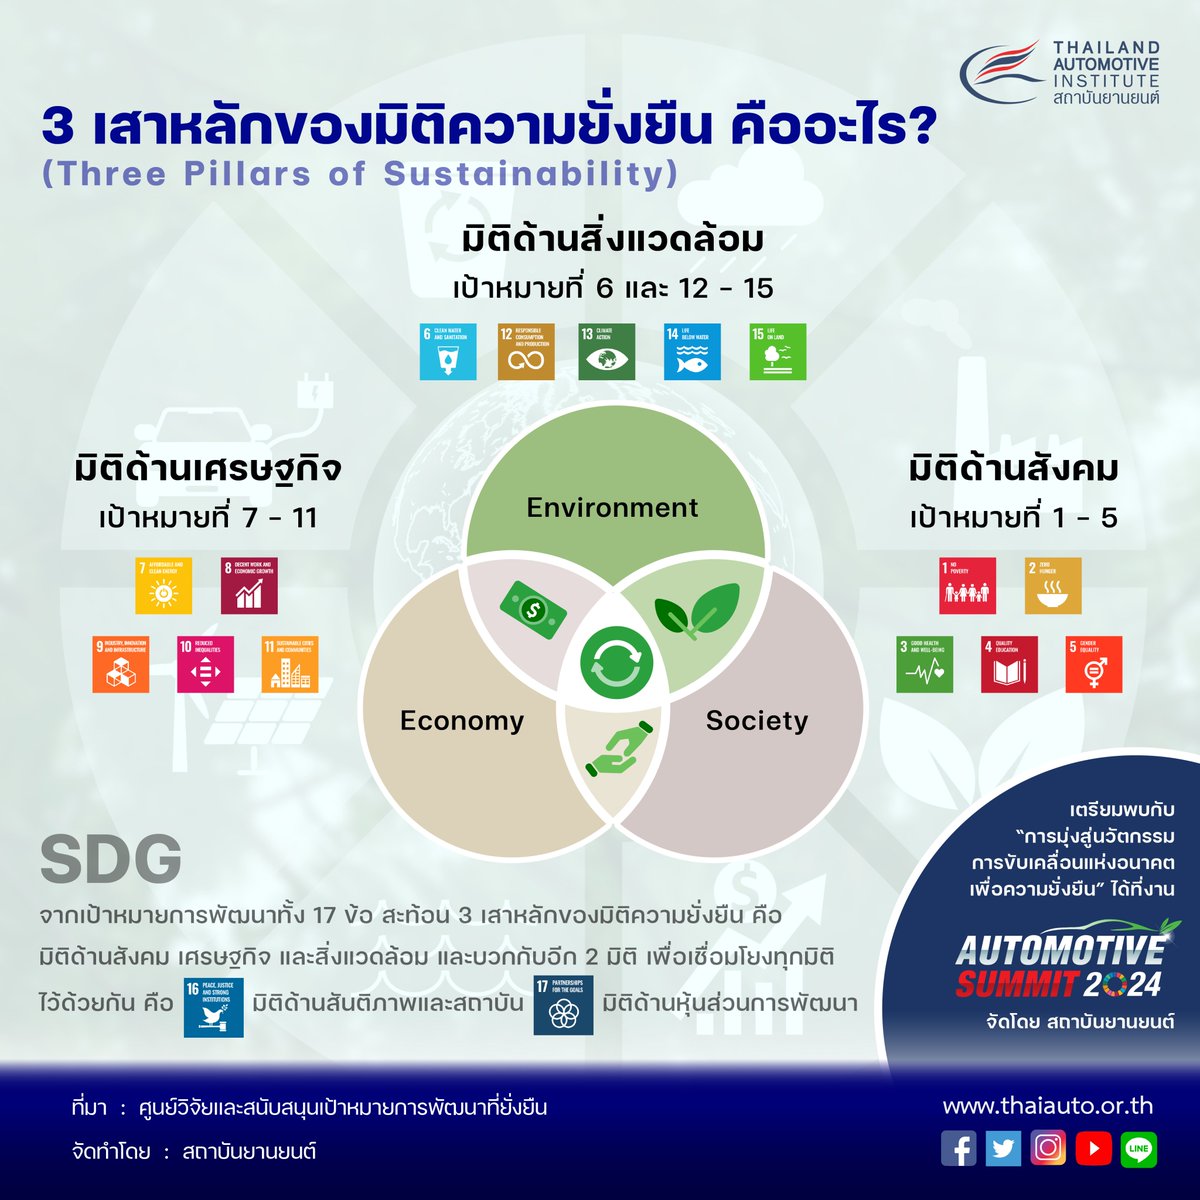 3 เสาหลักของมิติความยั่งยืน (Three Pillars of Sustainability) ของเป้าหมายการพัฒนาที่ยั่งยืน (Sustainable Development Goals: SDGs) คืออะไร ?

รายละเอียดเพิ่มเติม: thaiauto.or.th/2020/th/news/?…

#SDG #Sustainable #Sustainability #Infographic #สถาบันยานยนต์